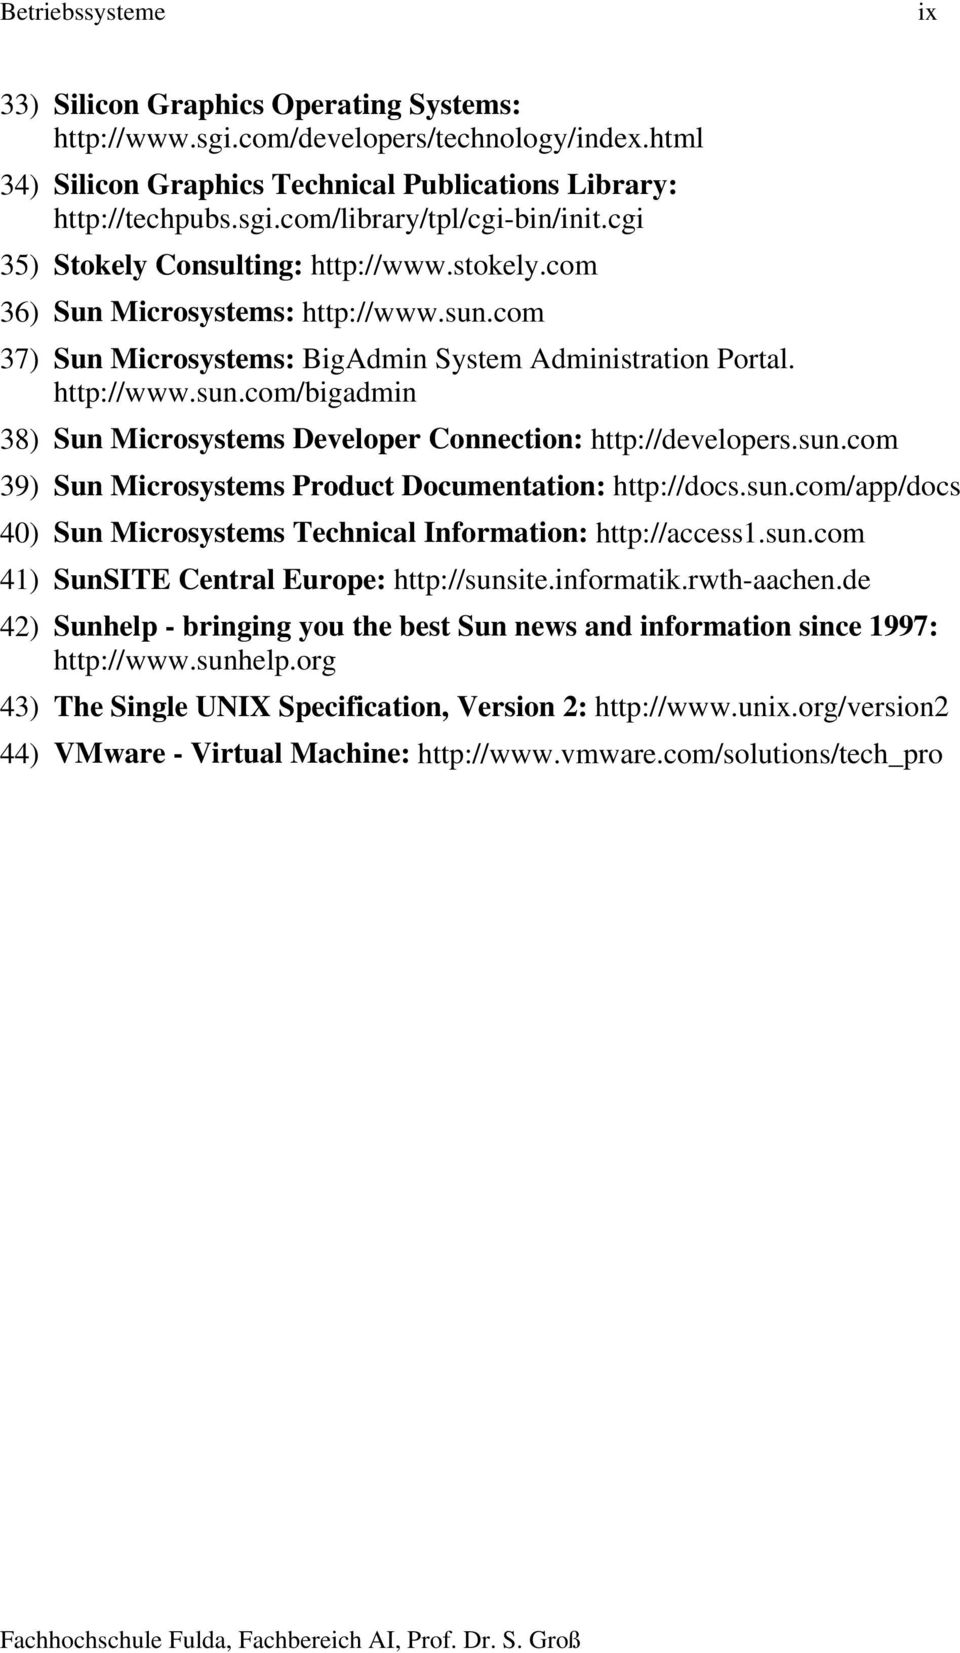 sun.com 39) Sun Microsystems Product Documentation: http://docs.sun.com/app/docs 40) Sun Microsystems Technical Information: http://access1.sun.com 41) SunSITE Central Europe: http://sunsite.